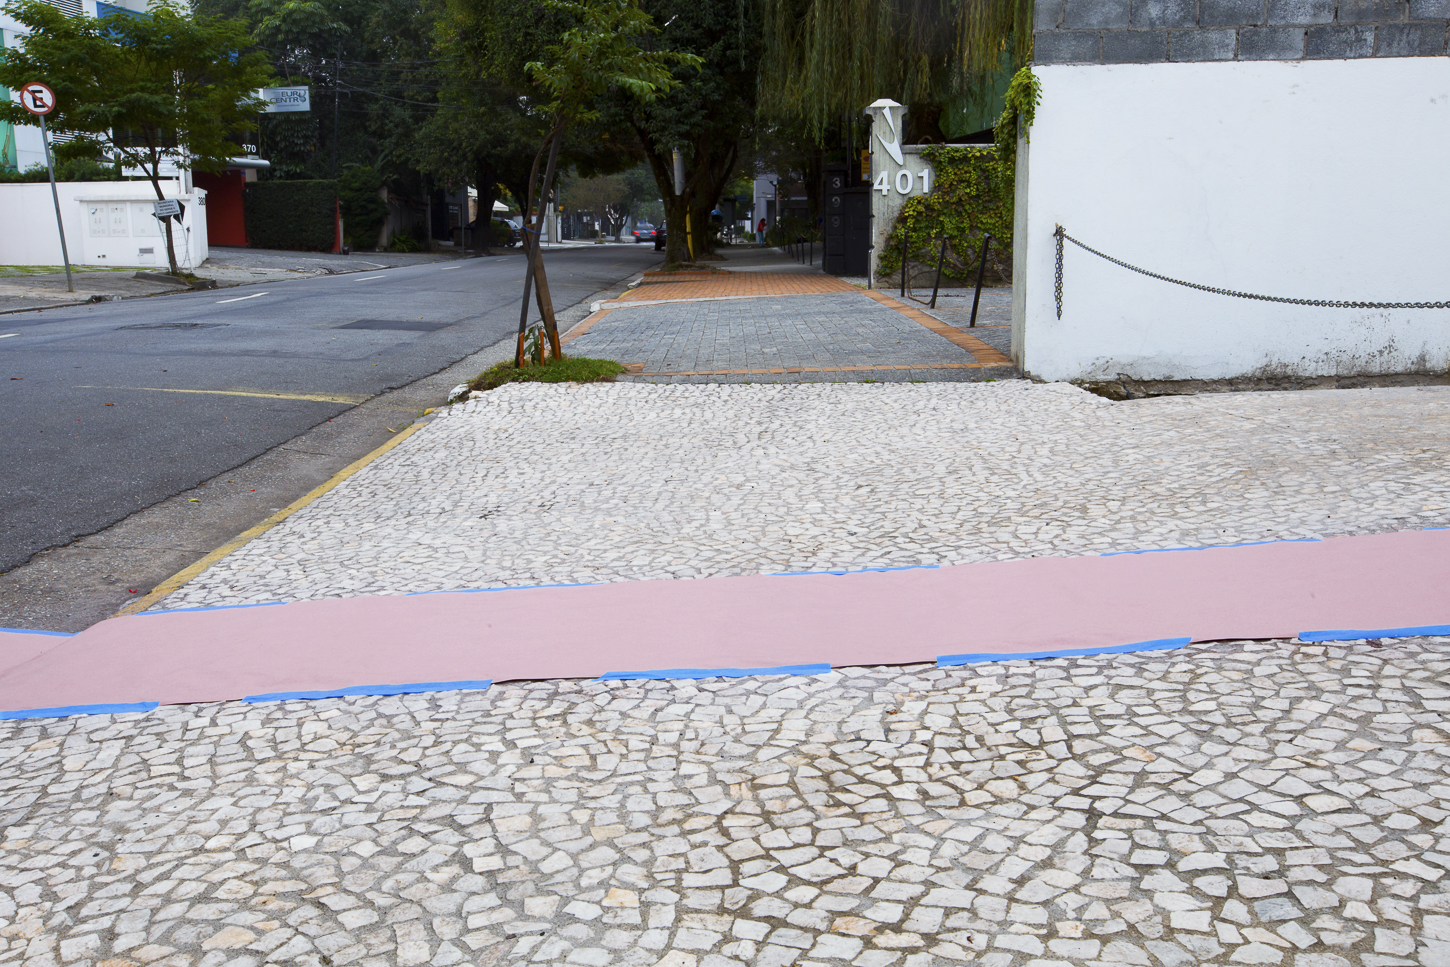  Intervenção Urbana com papel kraft e fita  Rua Gabriel Monteiro da Silva, número desconhecido,&nbsp; São Paulo.&nbsp; 15/06/2014 – 9:00hrs 